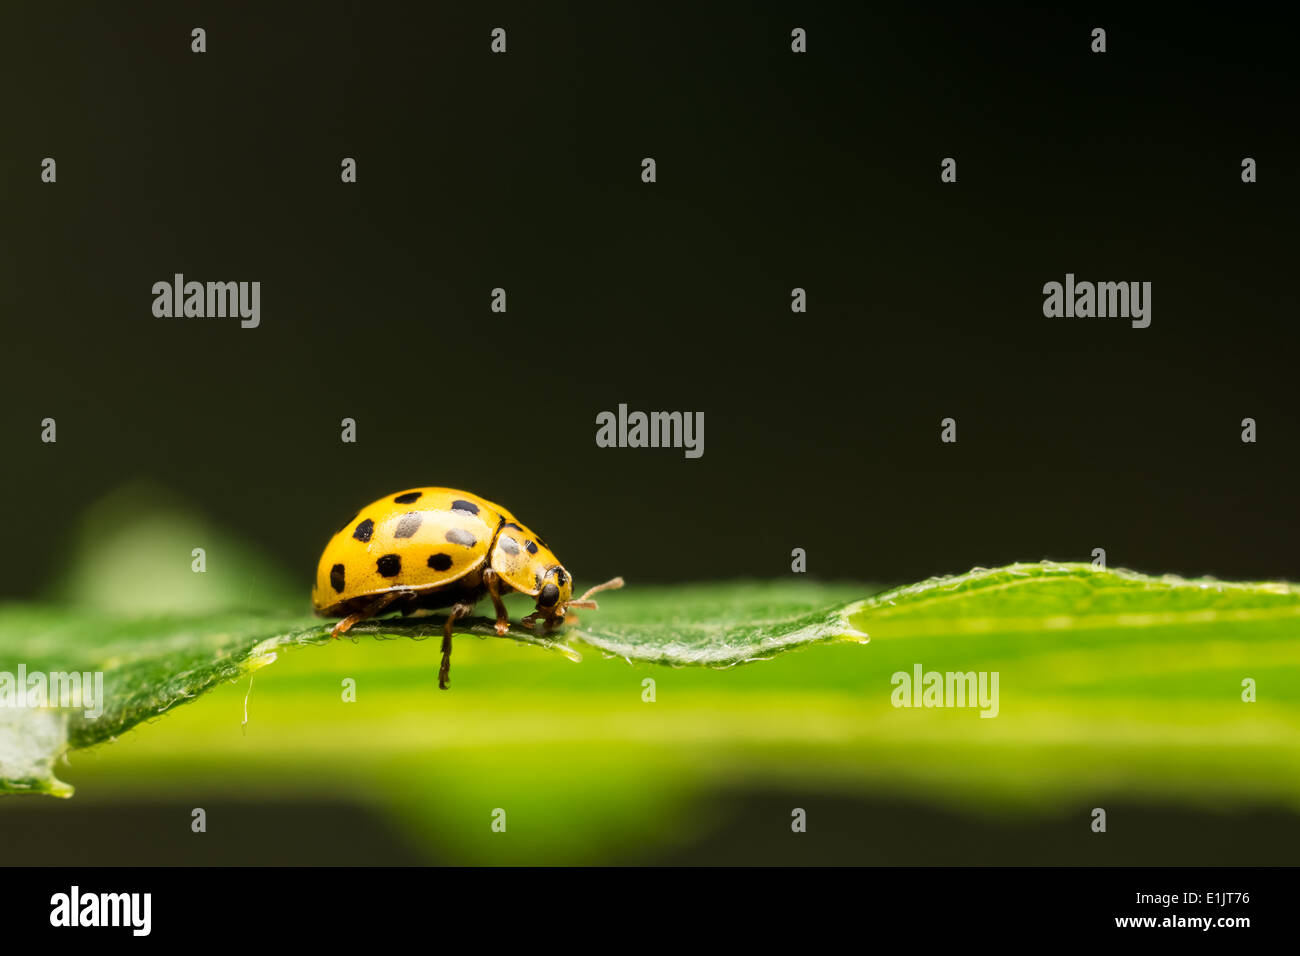 Yellow Ladybug Macro On Green Leaf Close Up Stock Photo